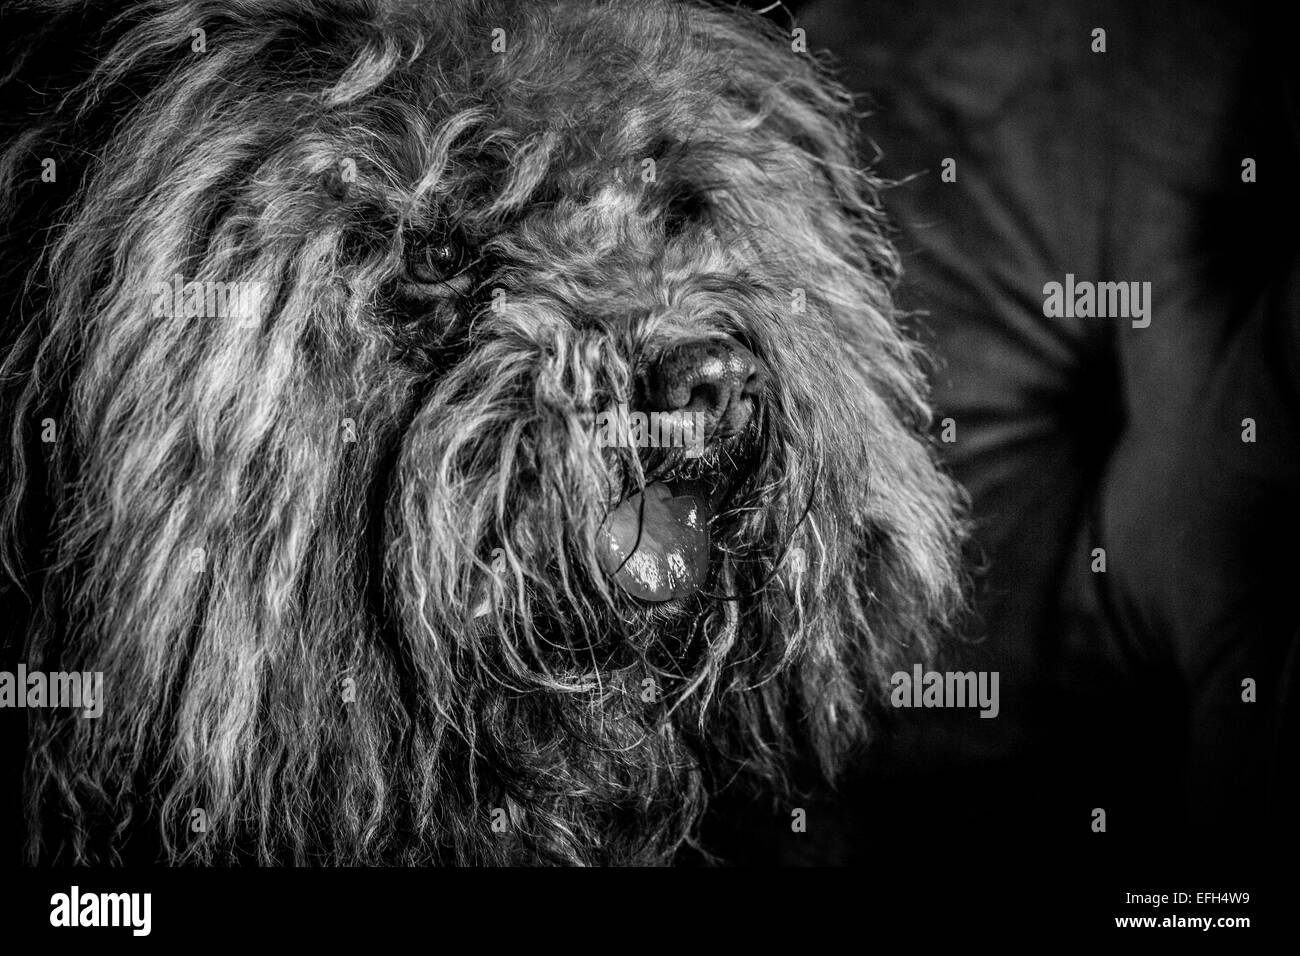 Ritratto di capelli lunghi acqua ungherese cane (puli) con linguetta sporgente, in bianco e nero Foto Stock